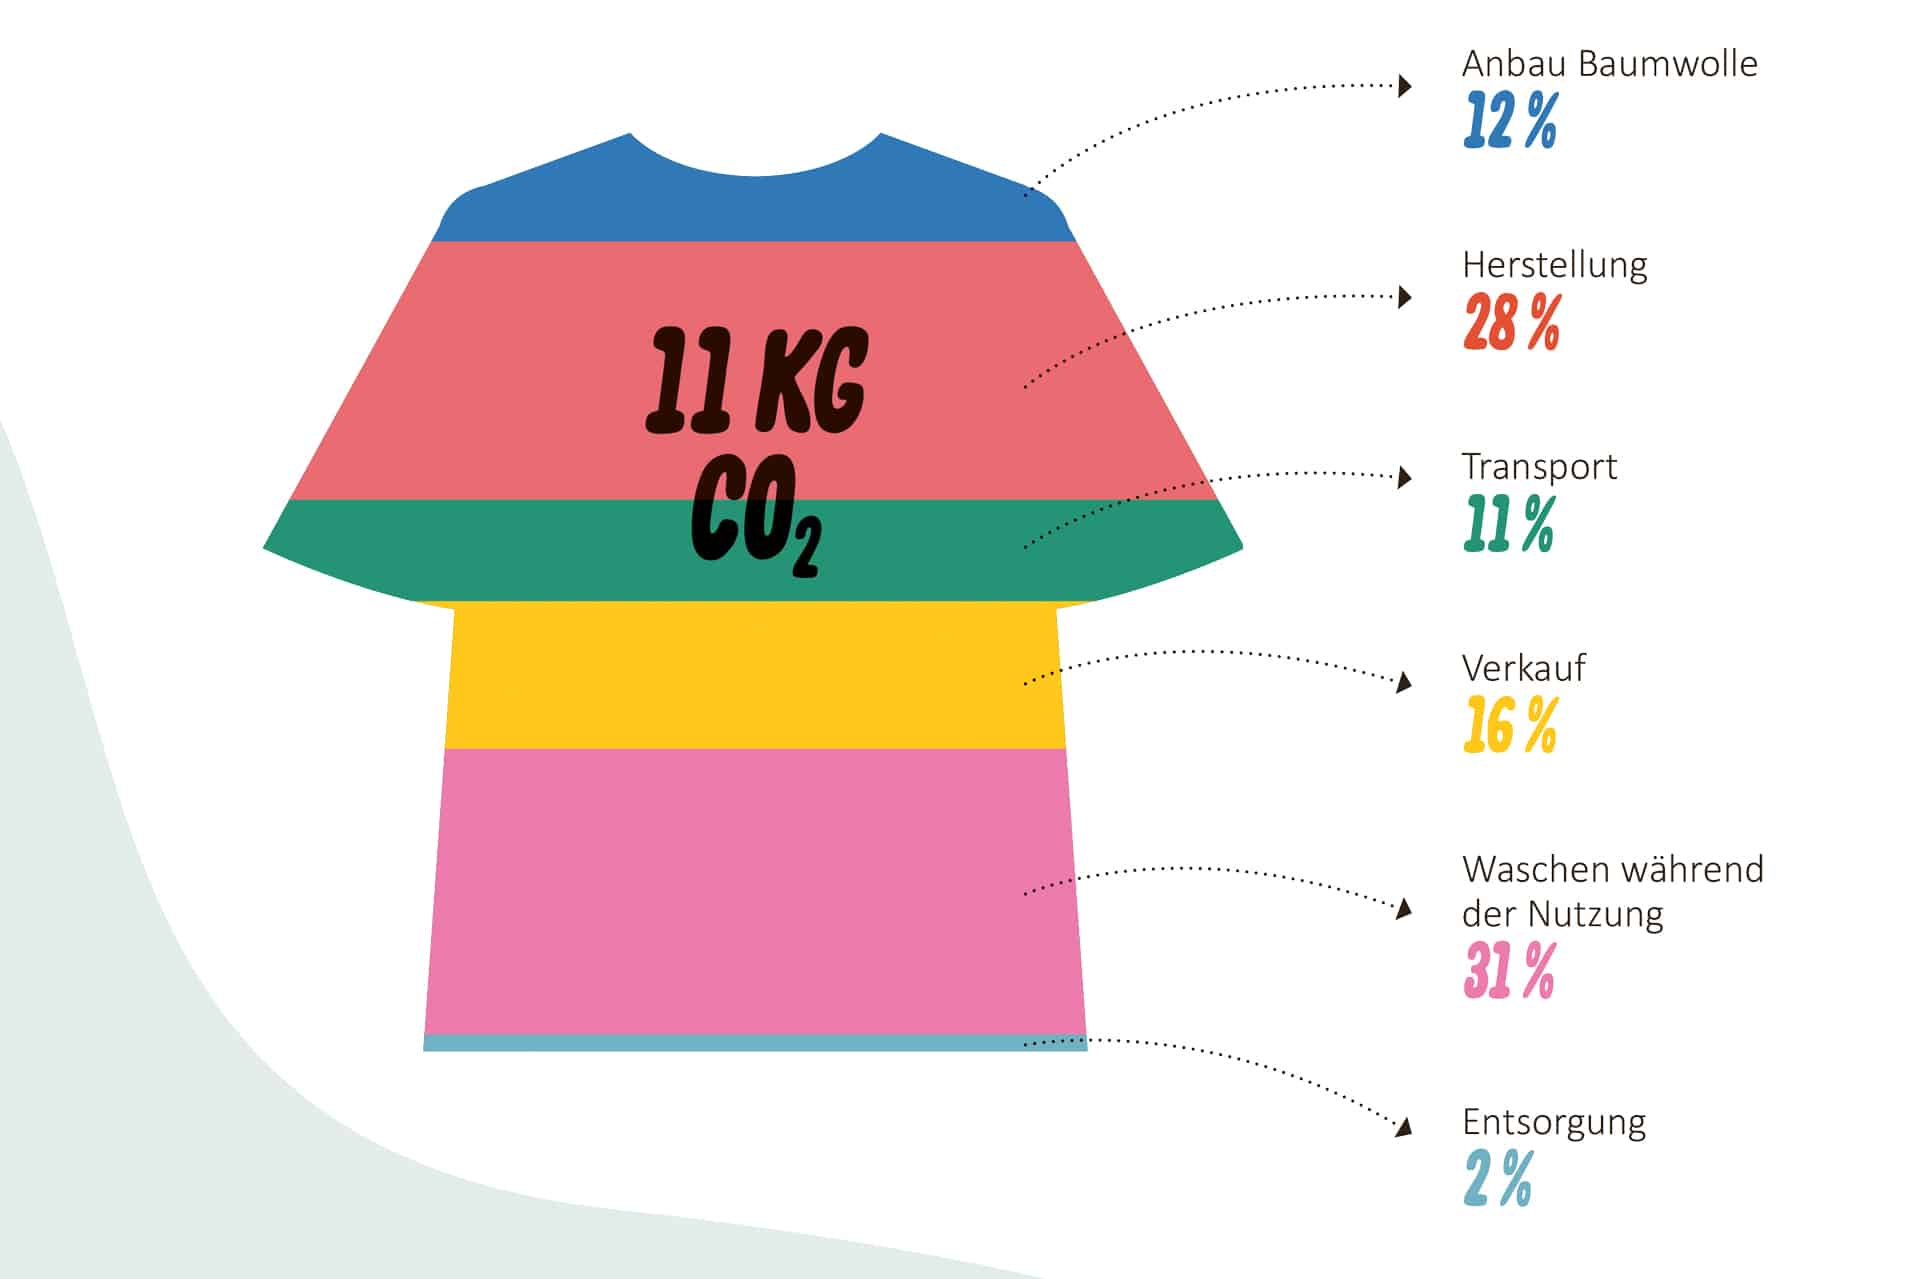 Ein gezeichnetes T-shirt wurde in 6 Abschnitte unterteilt, die den Verbrauch von CO2 aufteilen: 12% Anbau Baumwolle, 28% Herstellung, 11% Transport, 16% Verkauf, 31% Waschen während der Nutzung, 2% Entsorgung